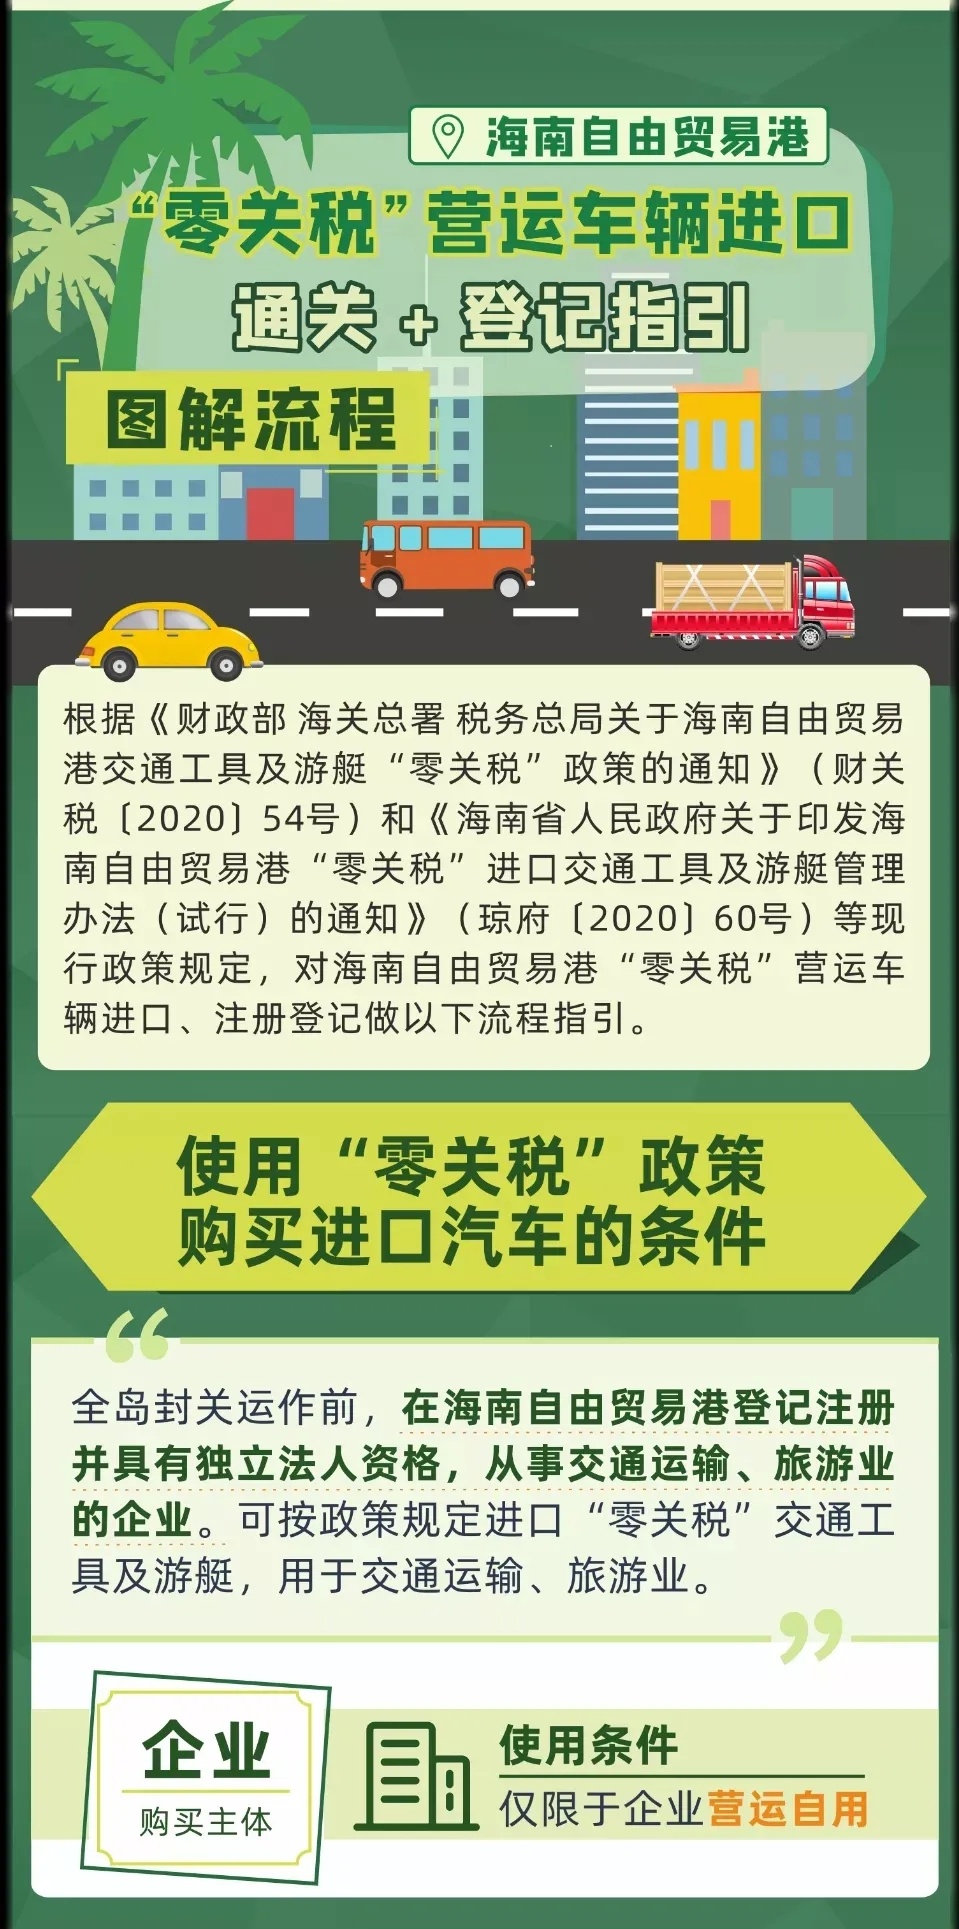 来了！海南自由贸易港“零关税”营运车辆进口及登记指引公告